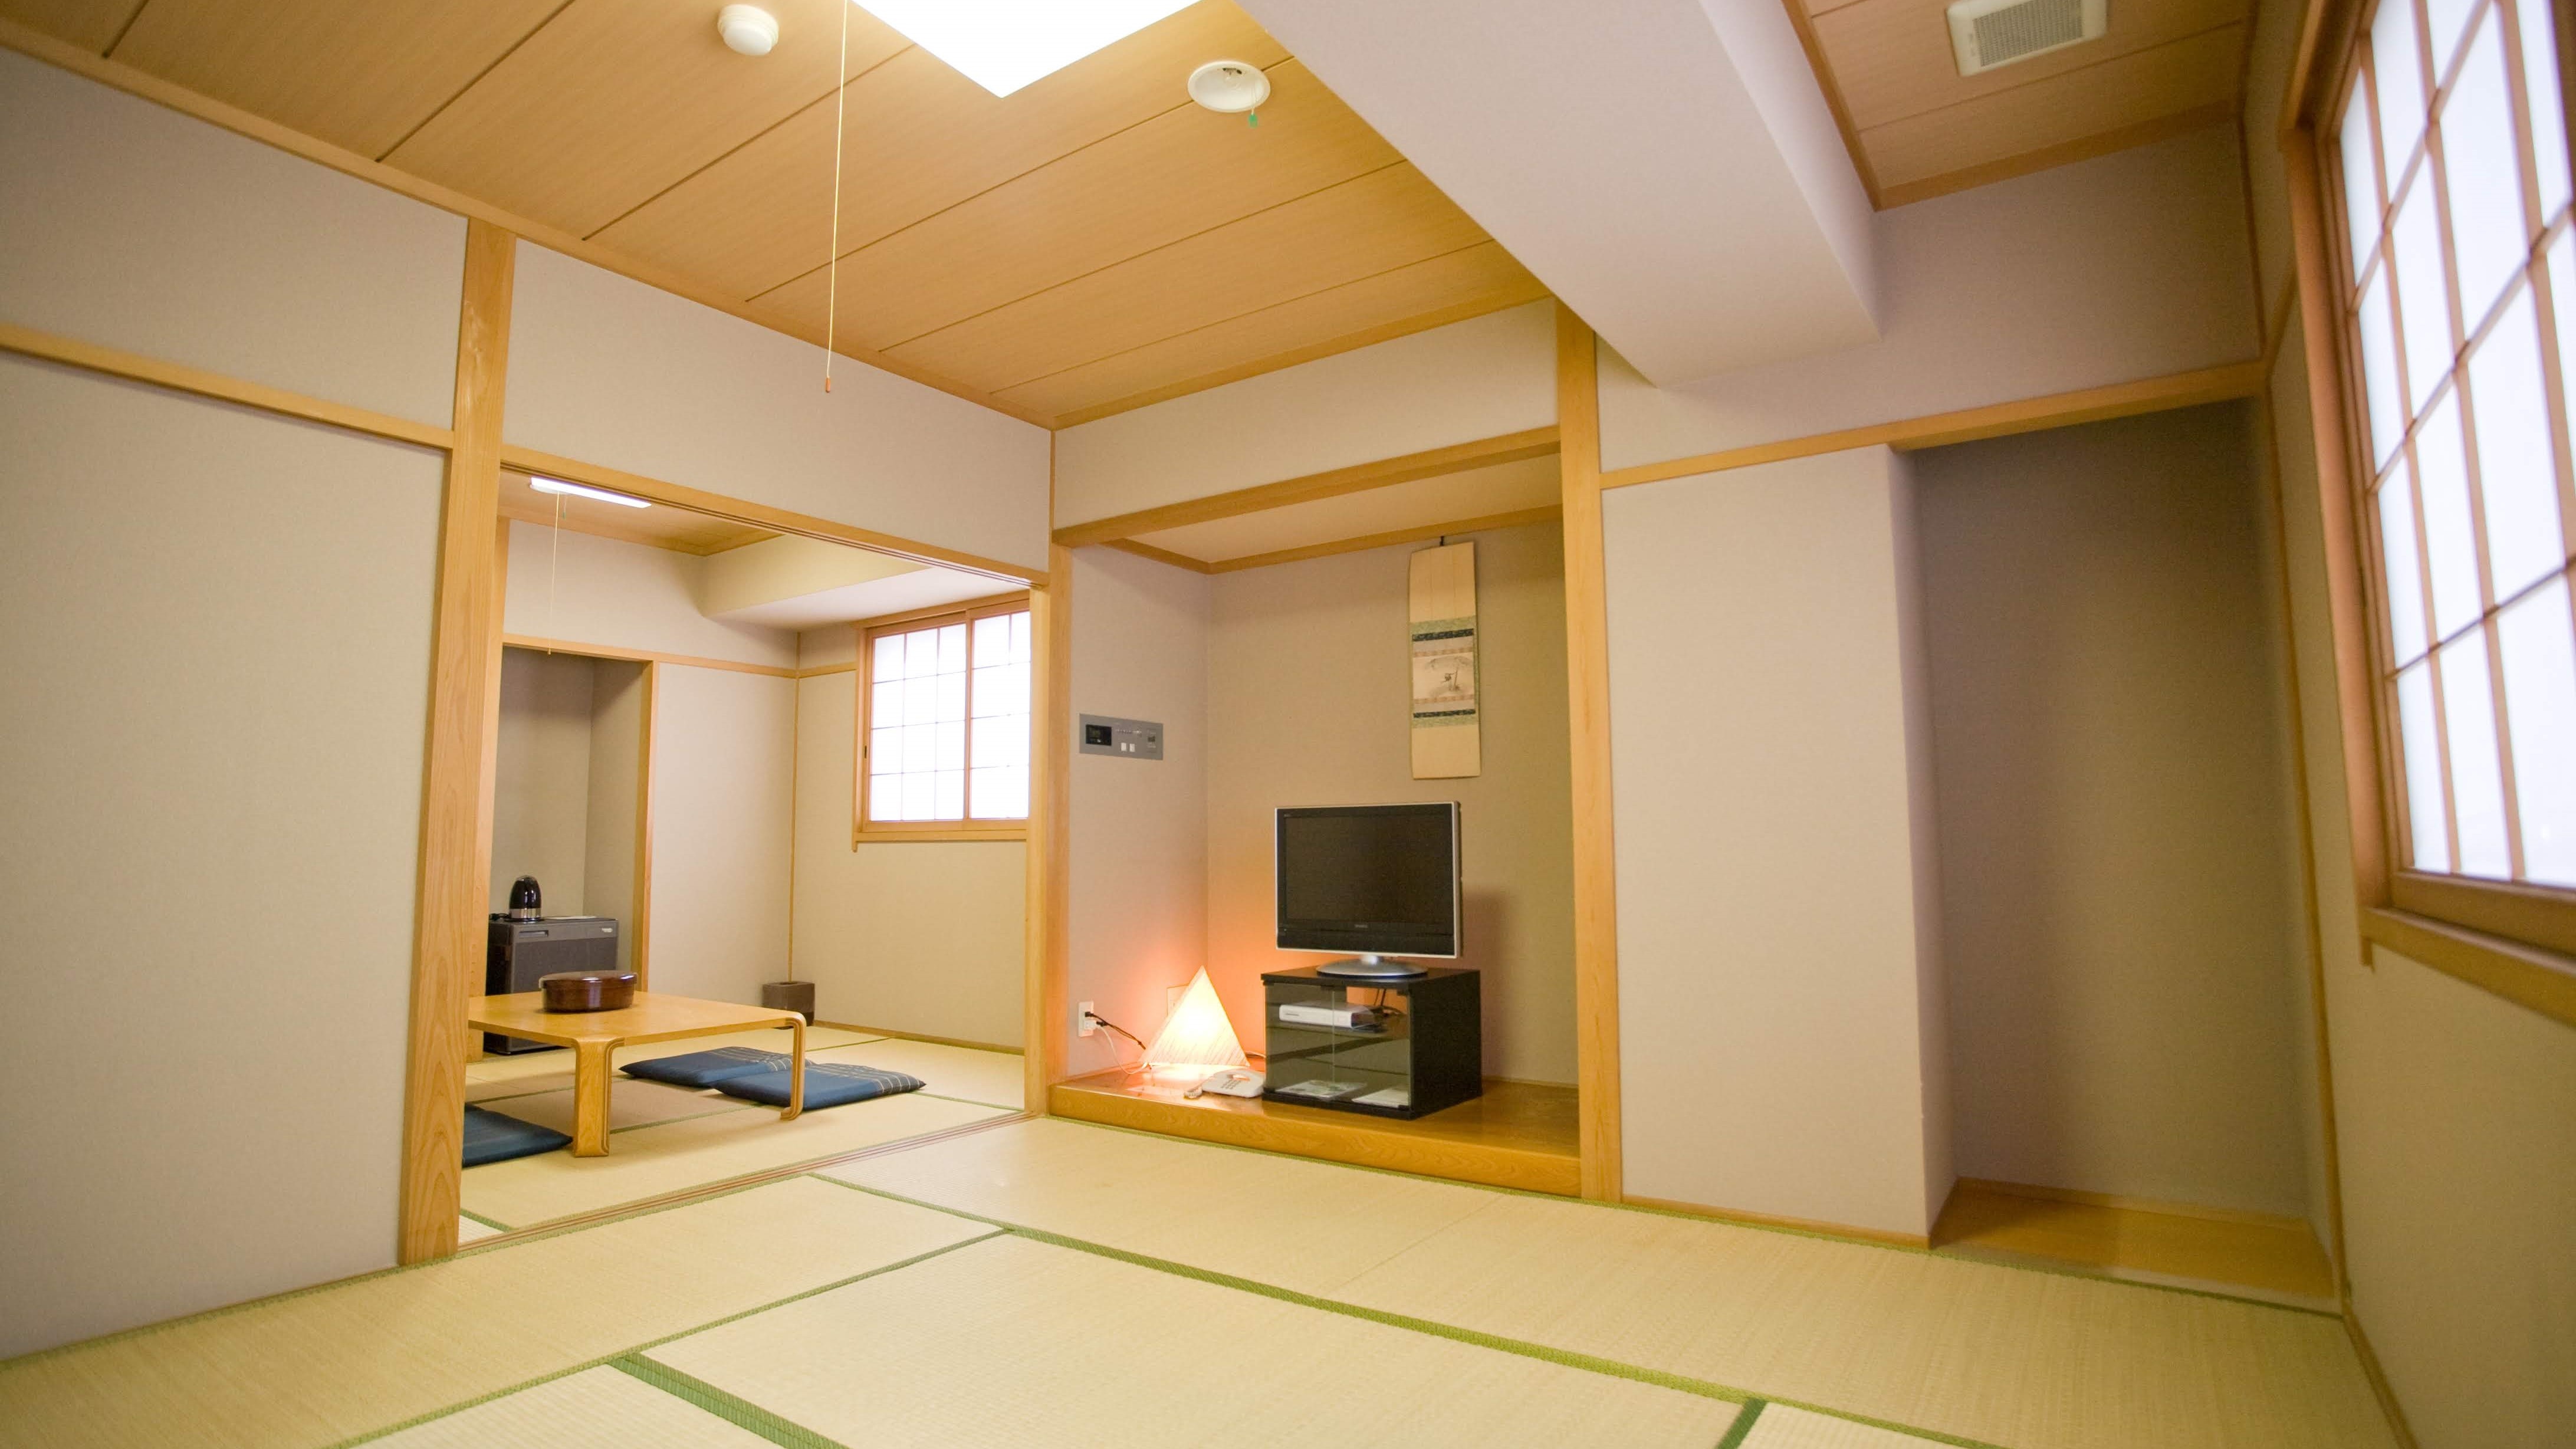 ห้องสไตล์ญี่ปุ่น "WA" มีสองห้อง 6 เสื่อทาทามิและ 8 เสื่อทาทามิ [ห้องมุม]